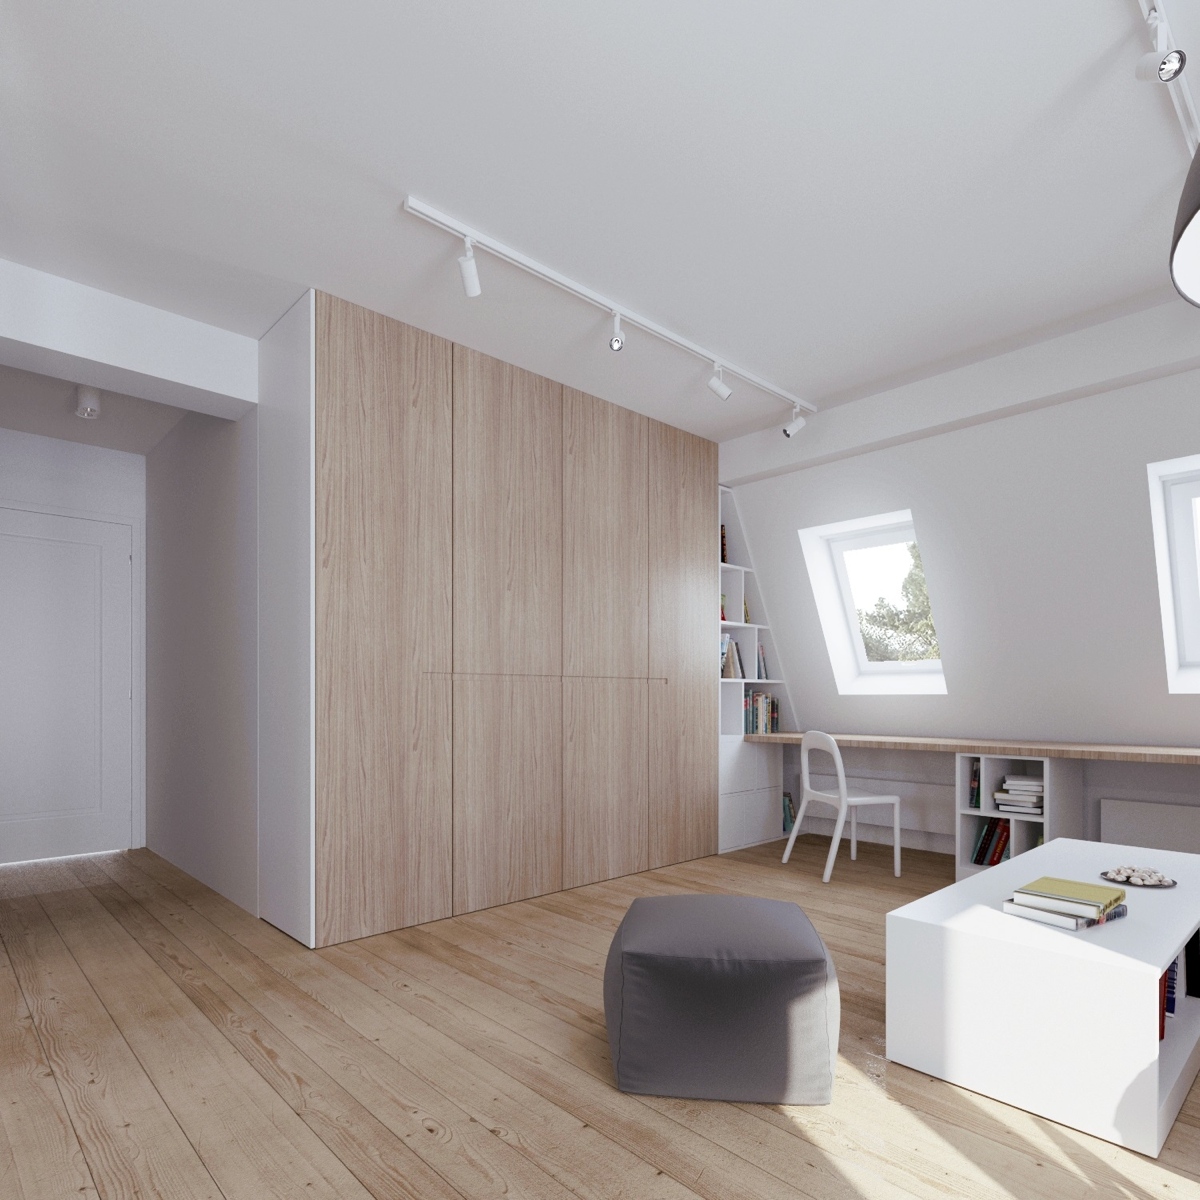 Wedo thiết kế nội thất thông minh cho căn hộ nhỏ tầng áp mái